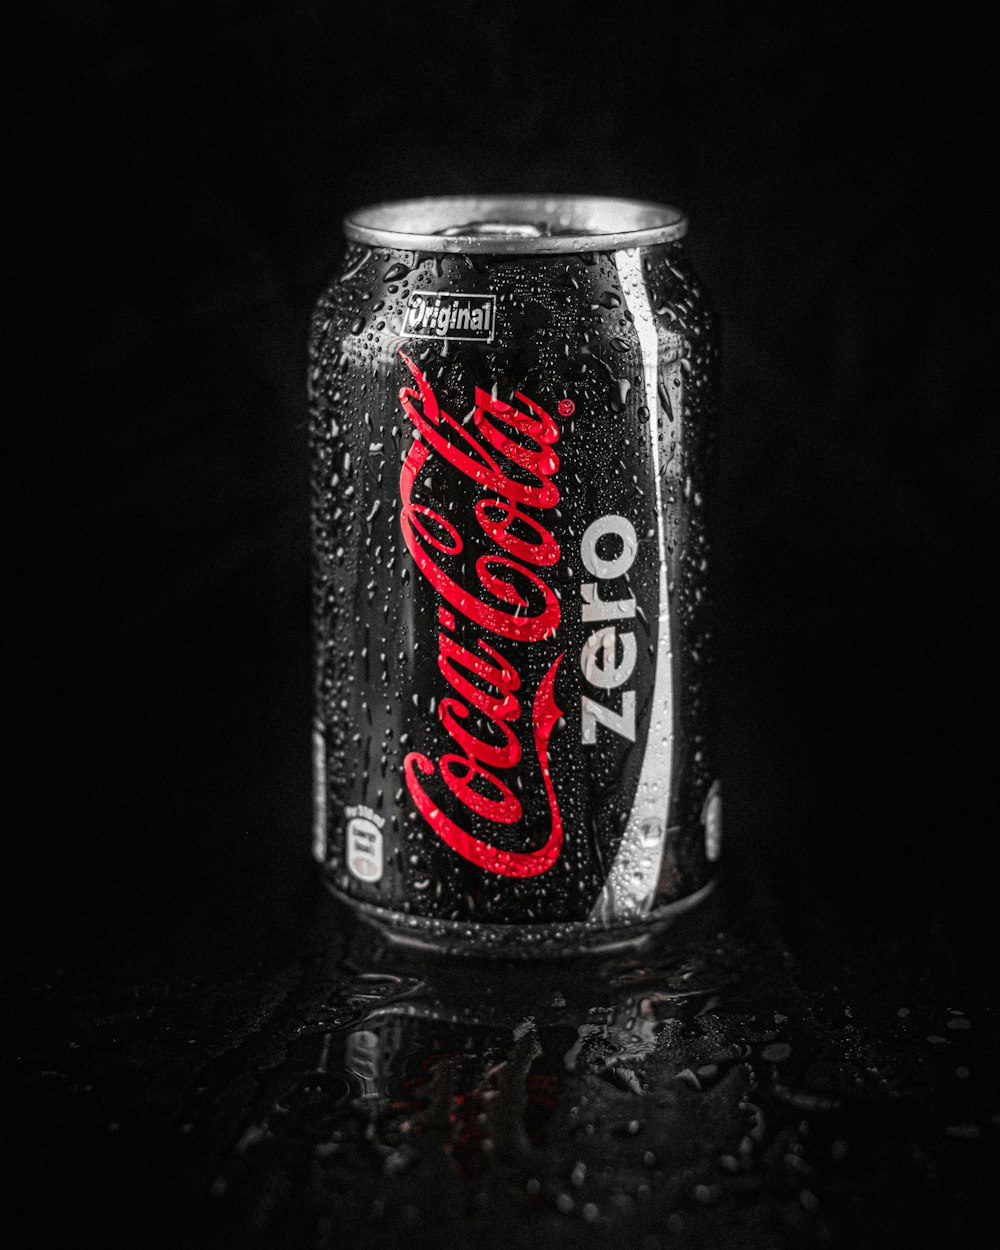 coca-cola zero lata na superfície preta